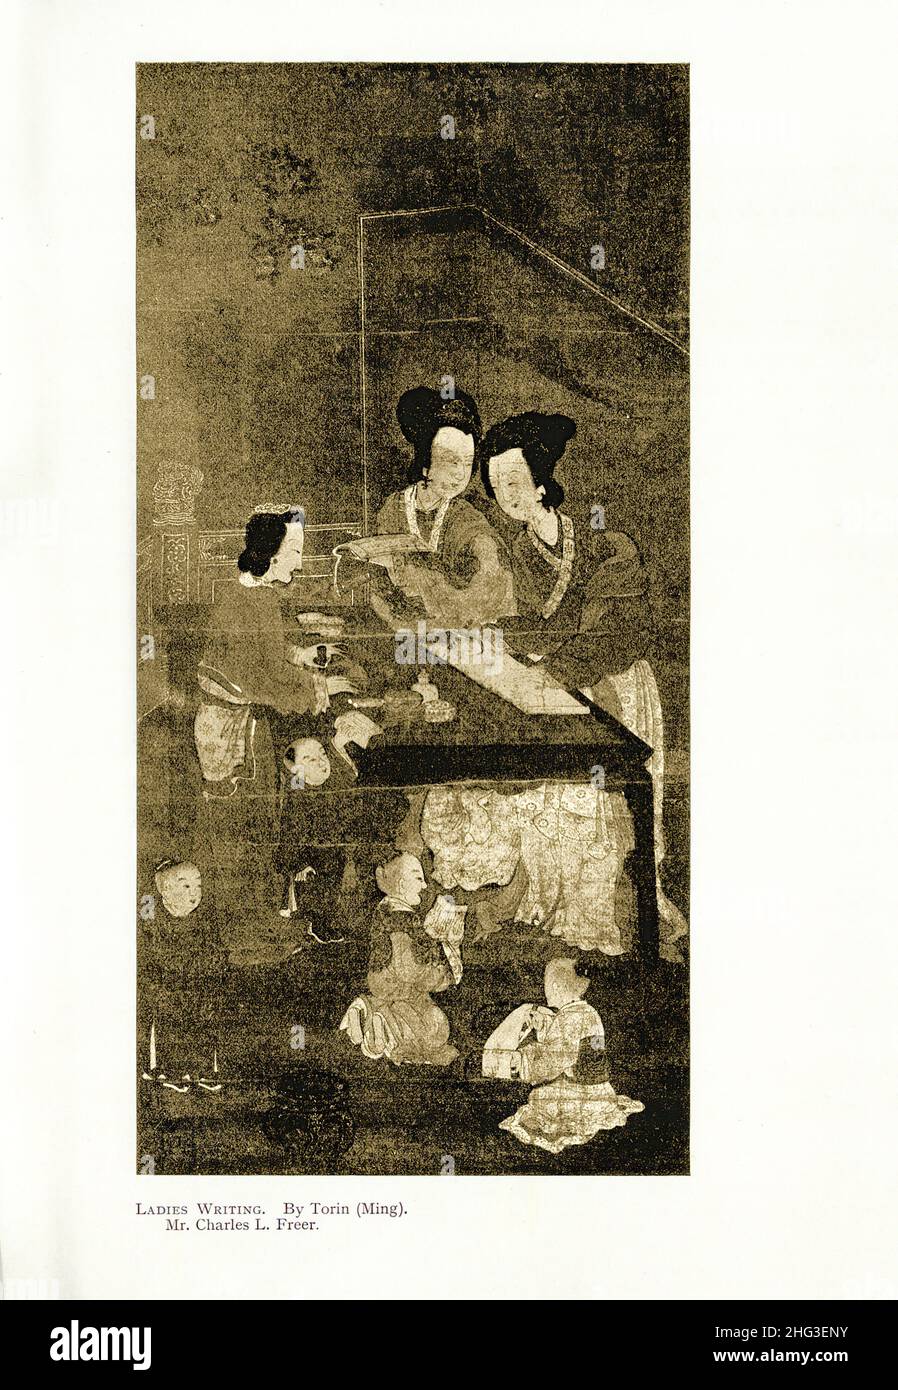 Chinesische mittelalterliche Malerei: Damen schreiben. Von Torin (Ming). Reproduktion der Buchdarstellung von 1912 Stockfoto